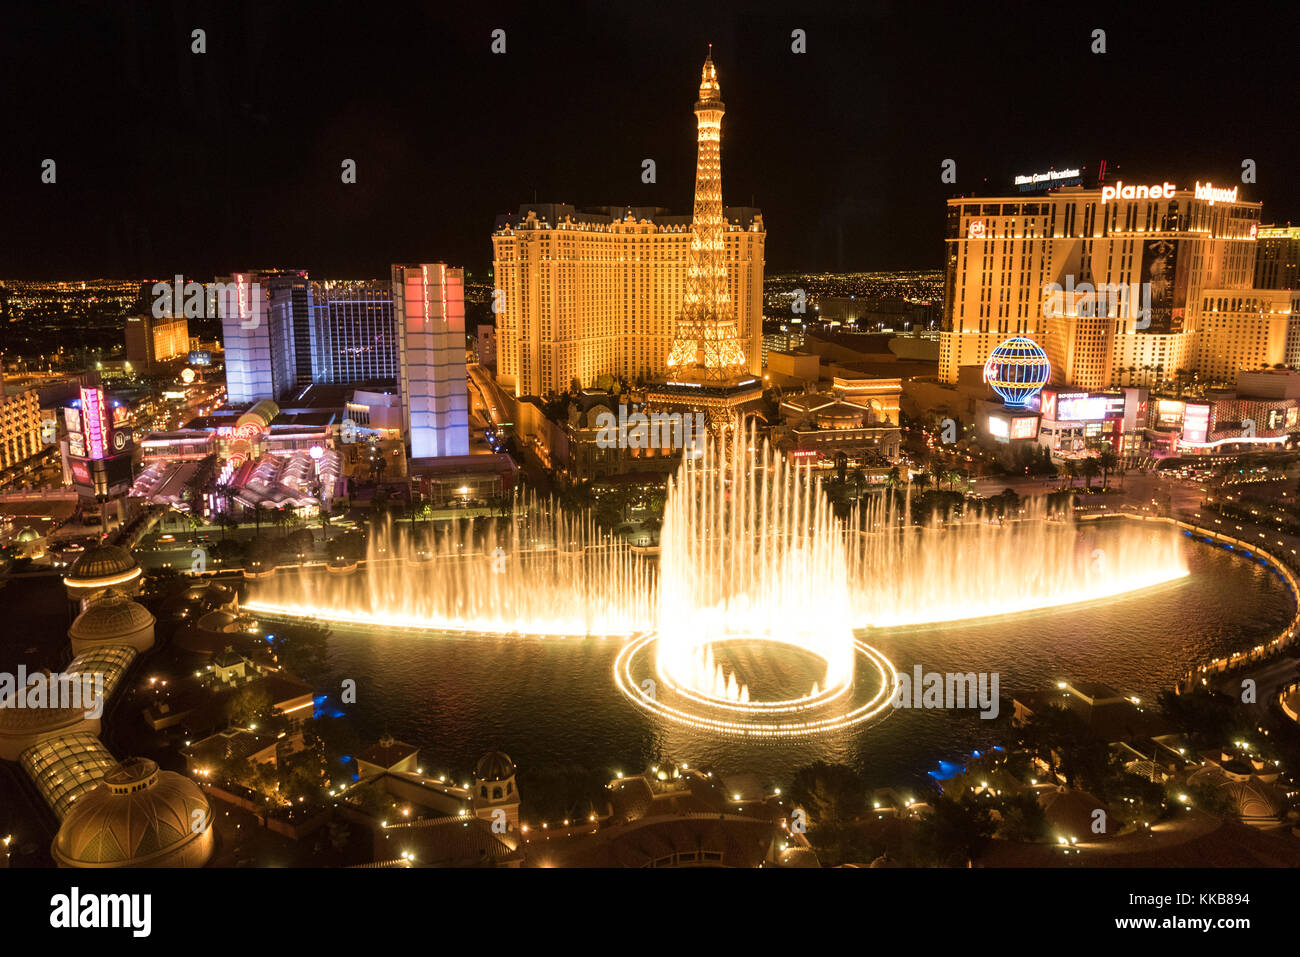 Vue sur les fontaines du Bellagio et une partie de la bande au soir, Las Vegas, Nevada, USA Banque D'Images